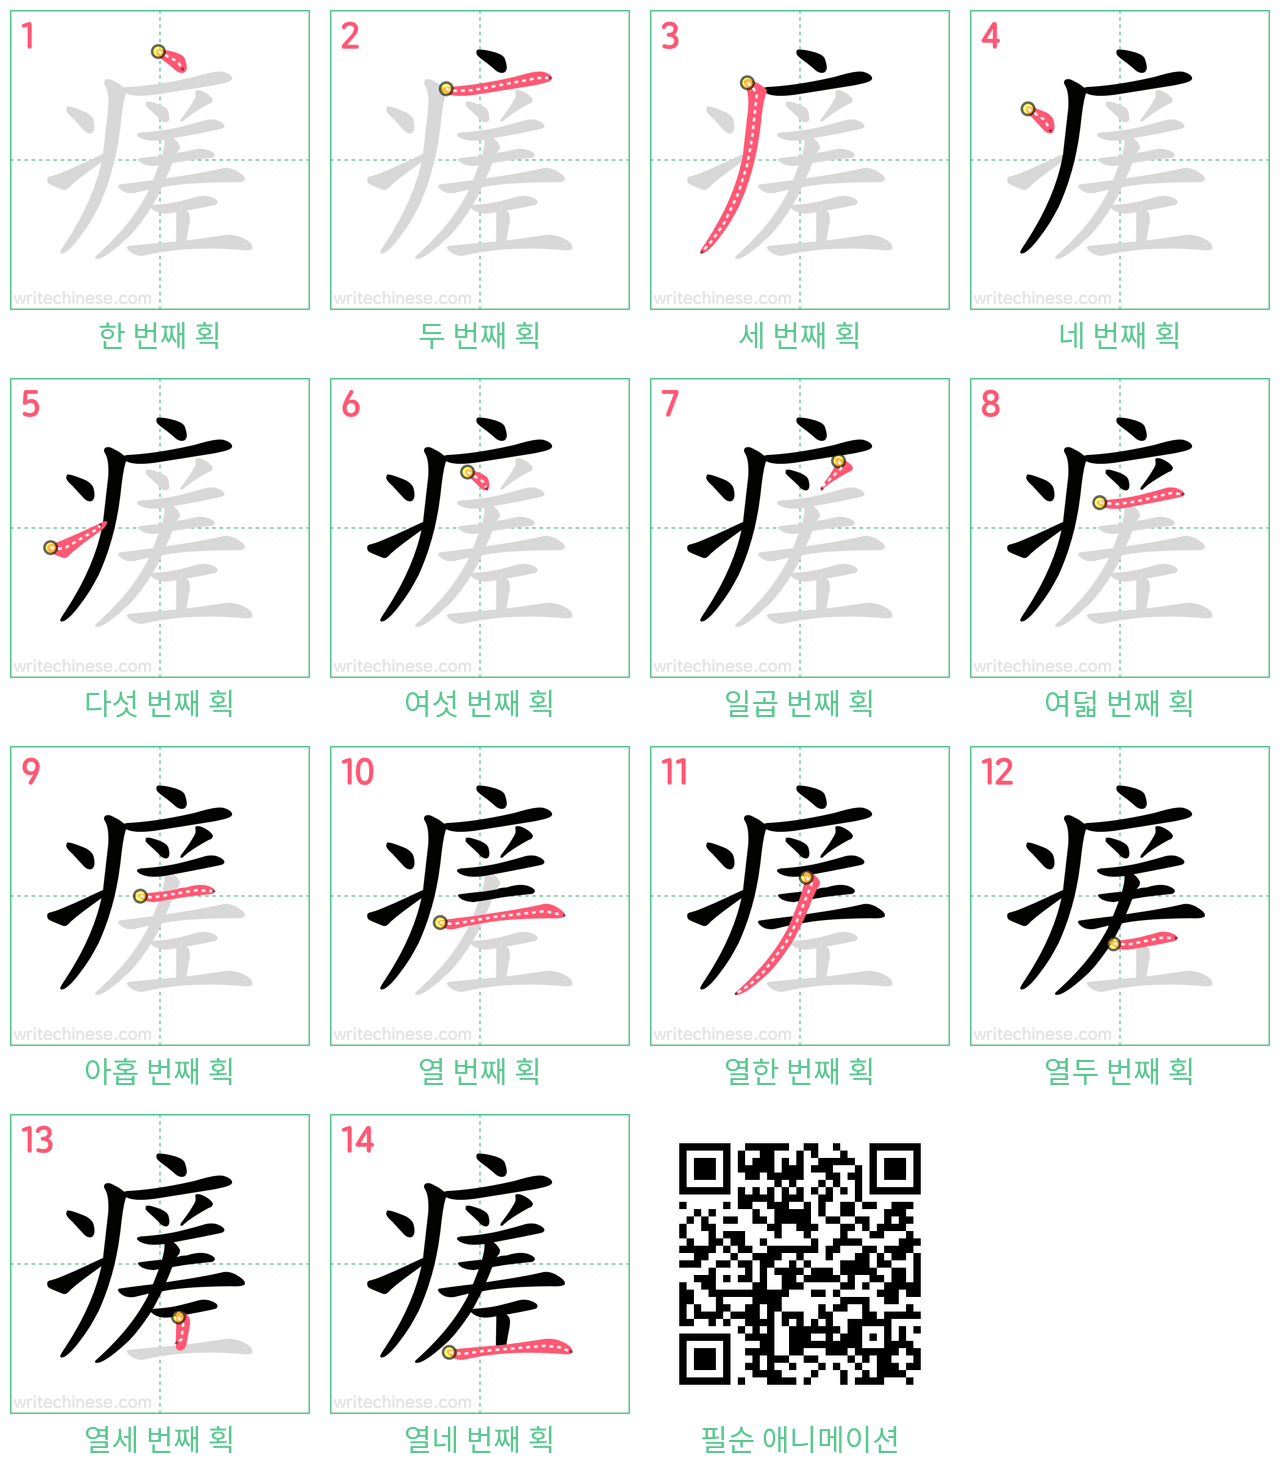 瘥 step-by-step stroke order diagrams